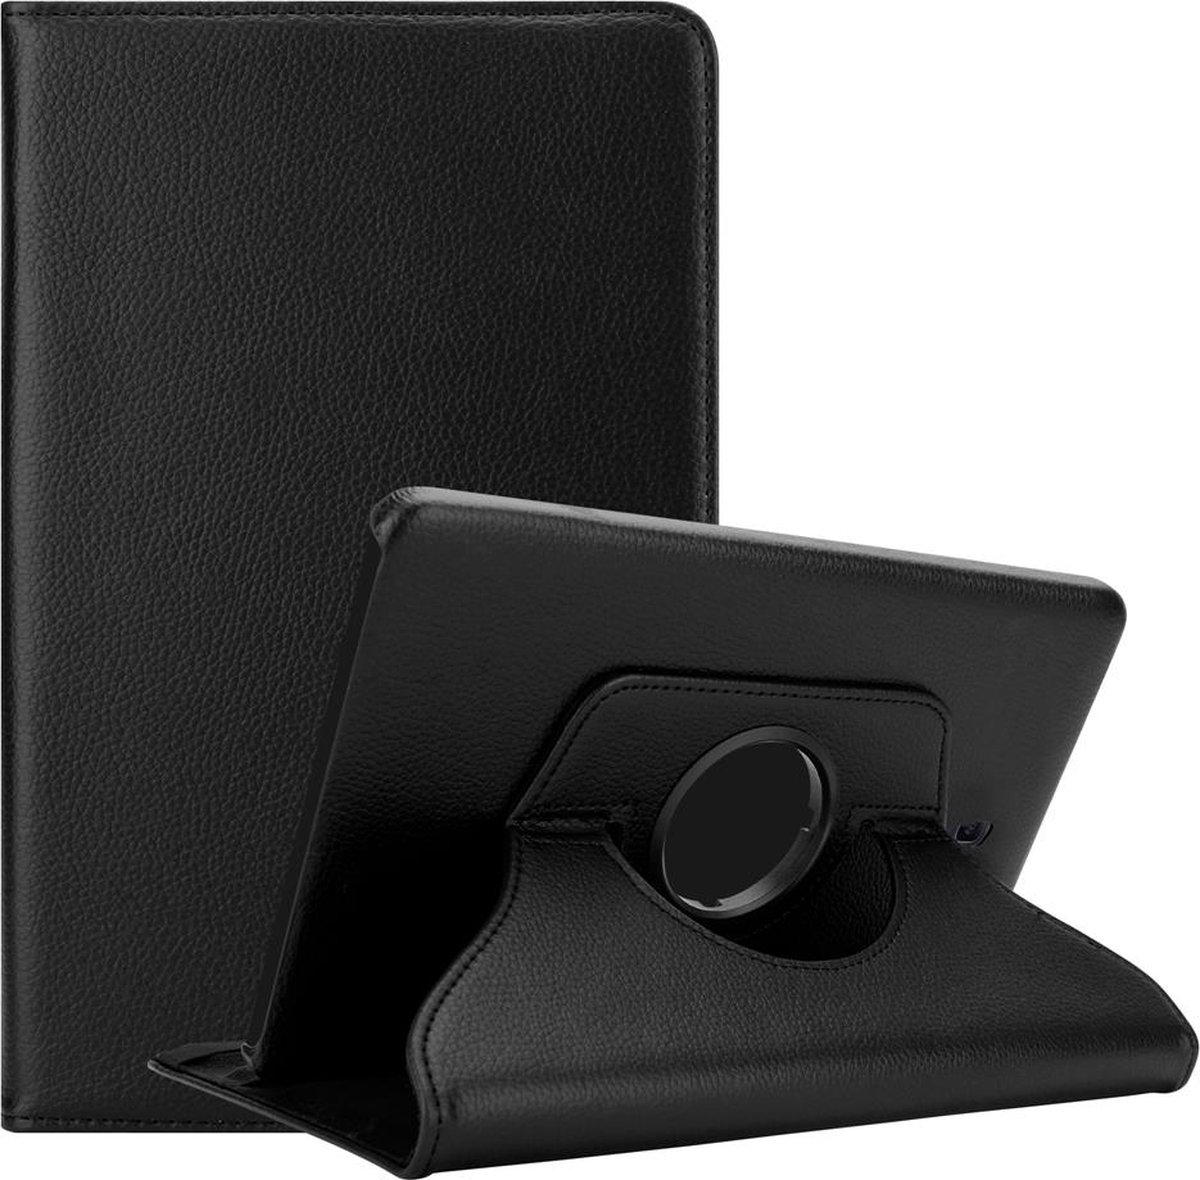 Cadorabo Tablet Hoesje voor Samsung Galaxy Tab A (10.5 inch) in OUDERLING ZWART - Beschermhoes ZONDER auto Wake Up, met stand functie en elastische band sluiting Book Case Cover Etui